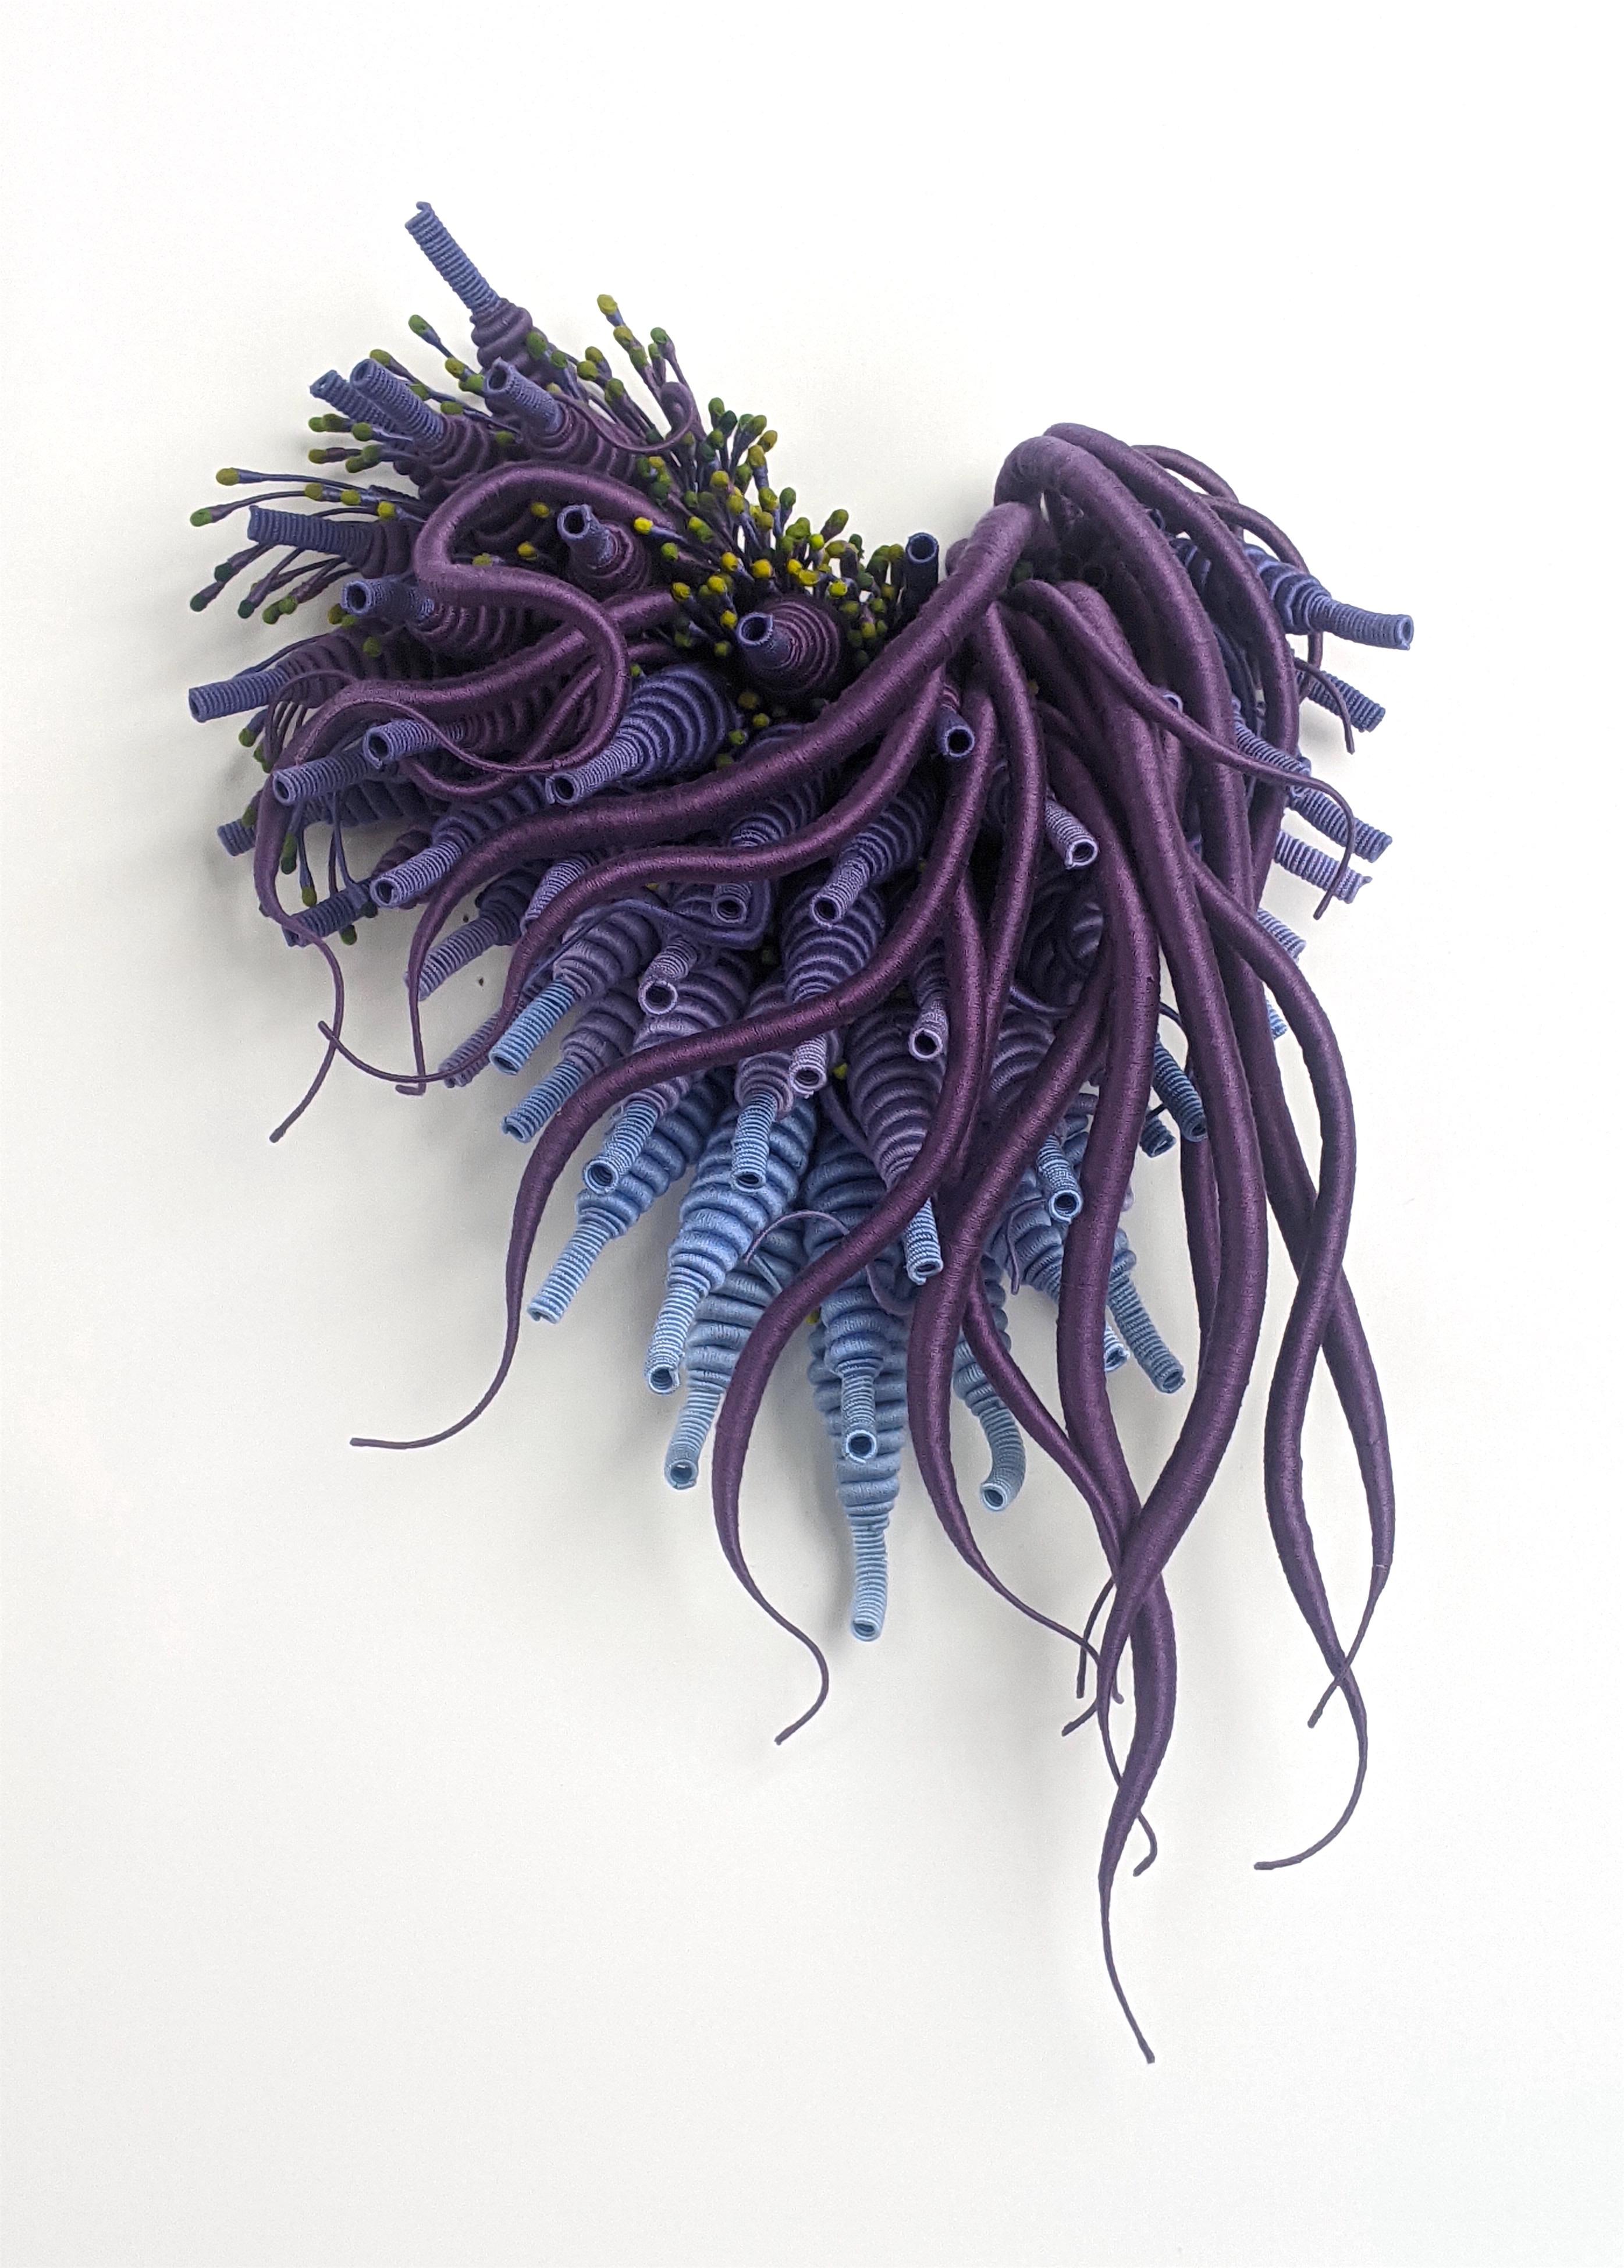 Specimen 24, gerahmte, von der Natur inspirierte, handgefärbte lila und blaue Faserskulptur